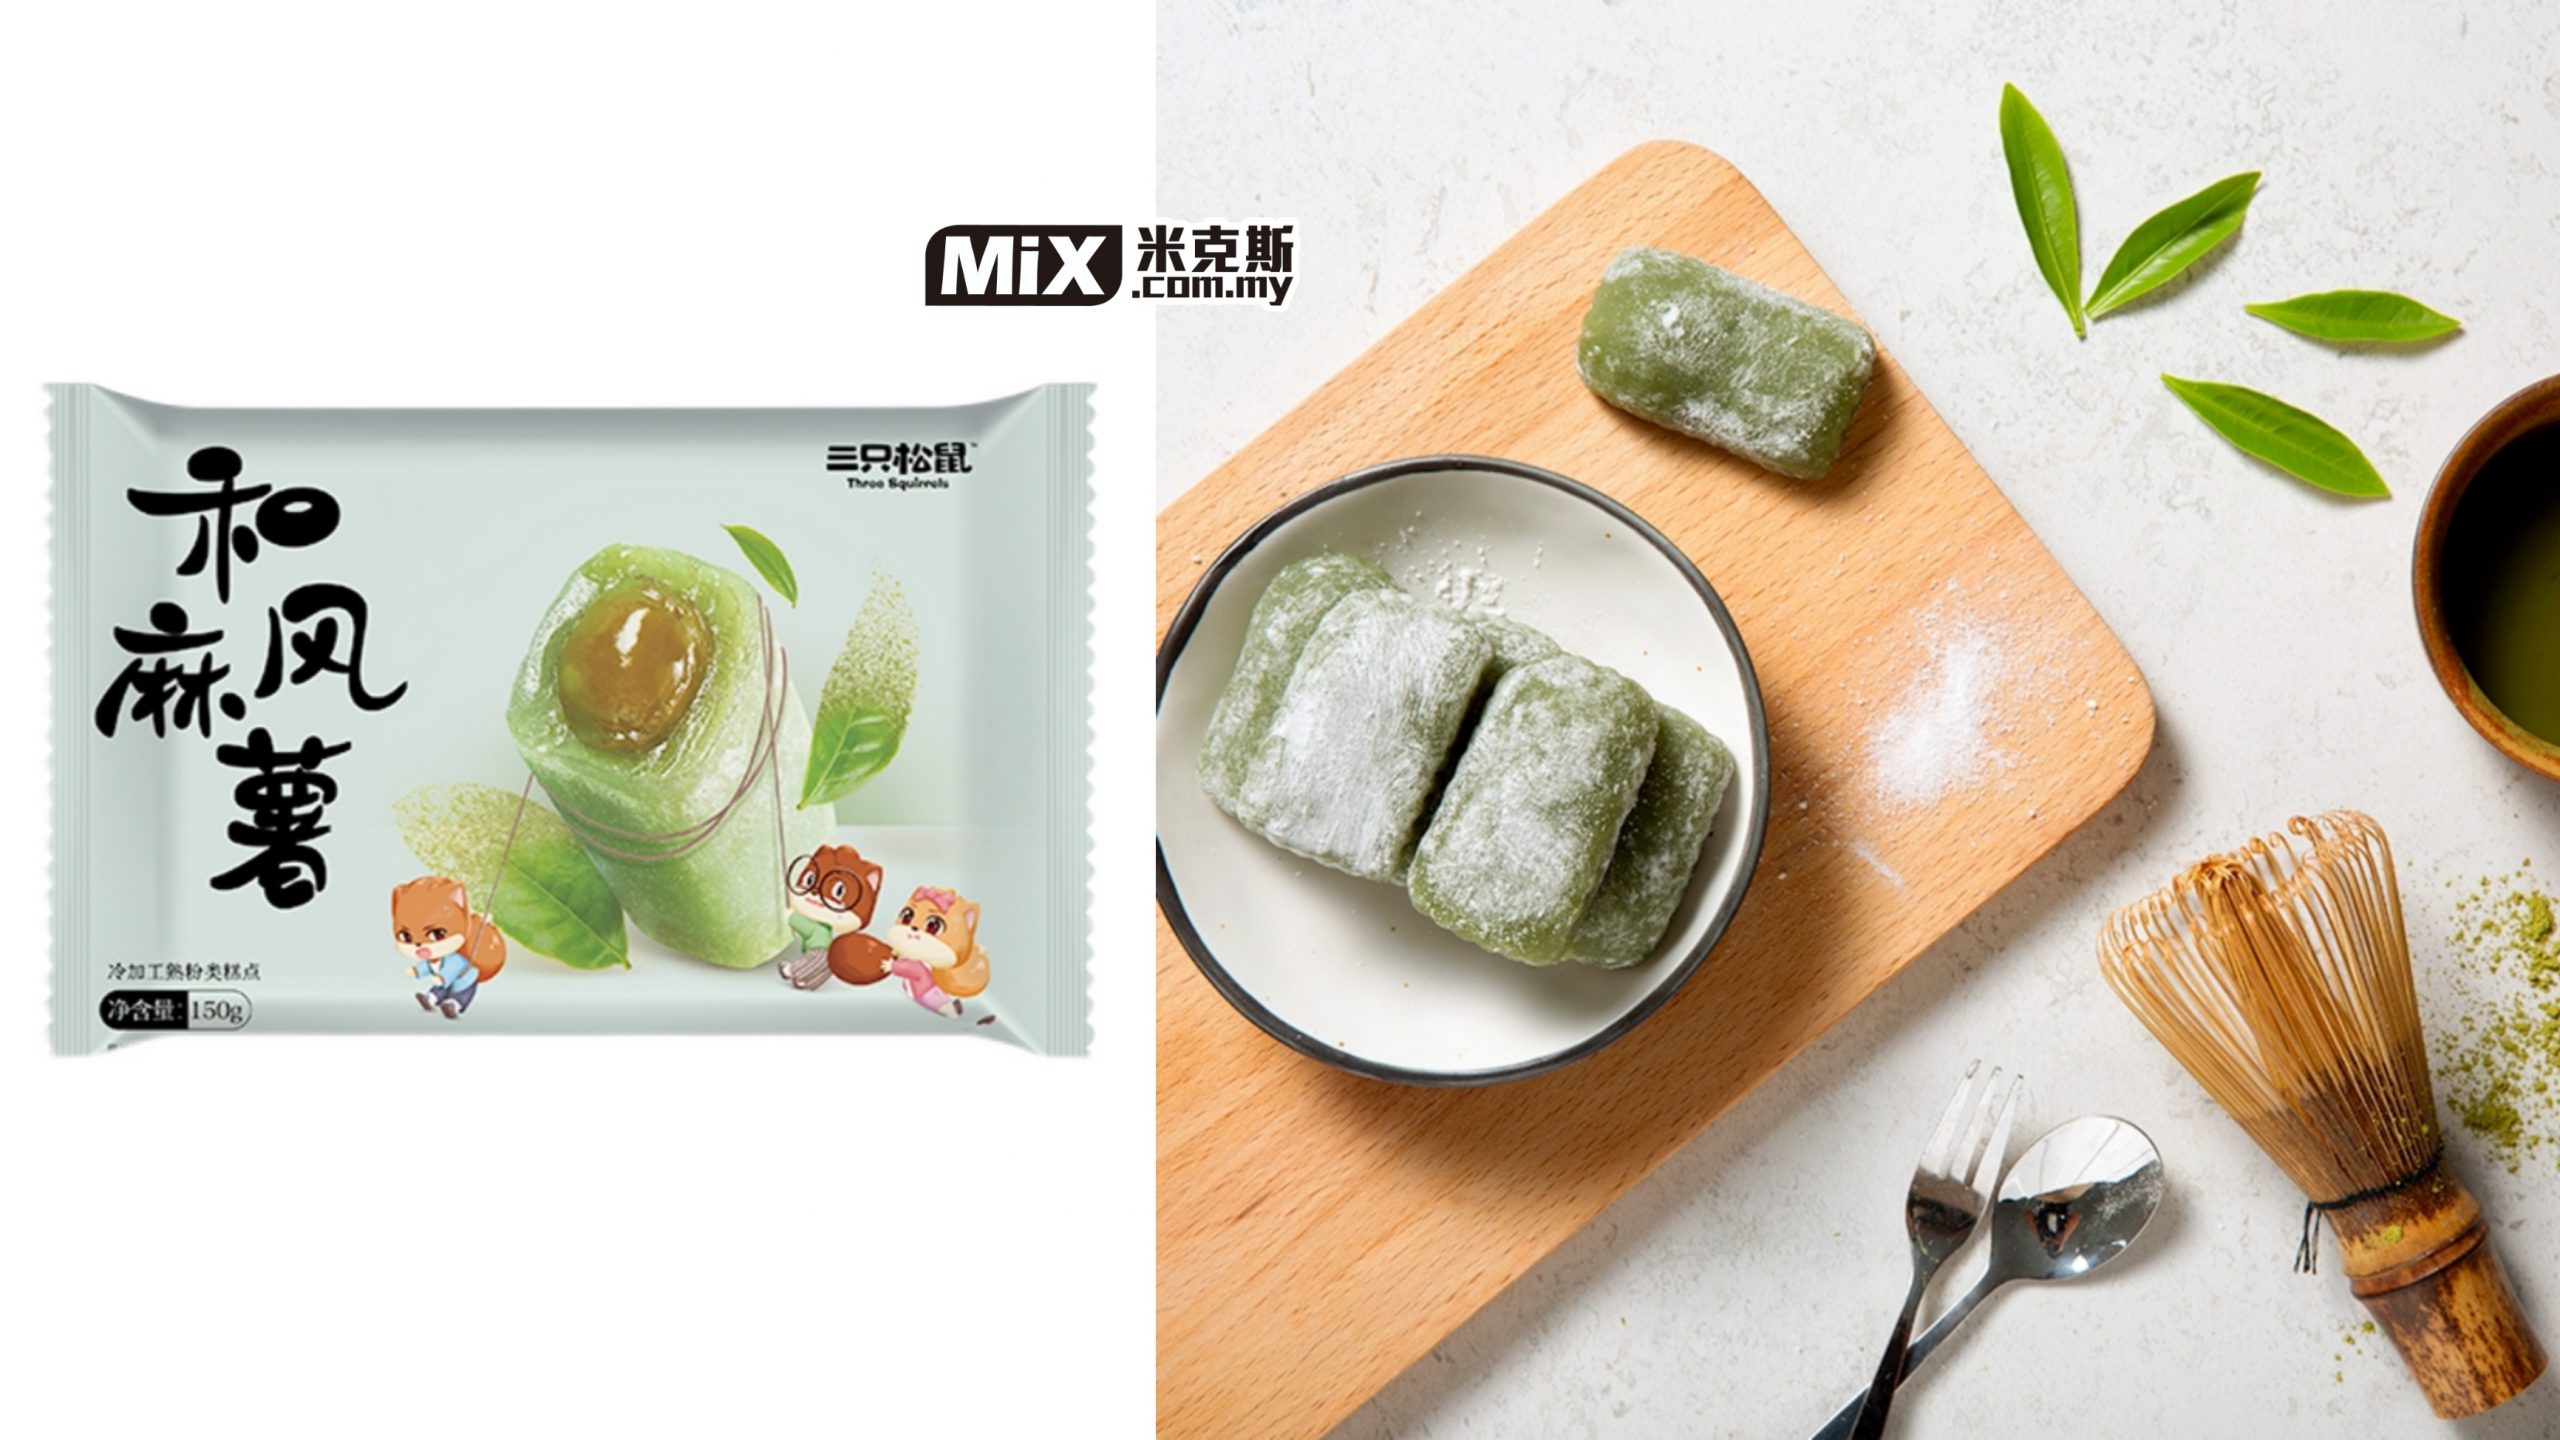 三只松鼠和风麻糬 抹茶味 Three Squirrels Japanese Mochi Matcha Flavor Mix Store